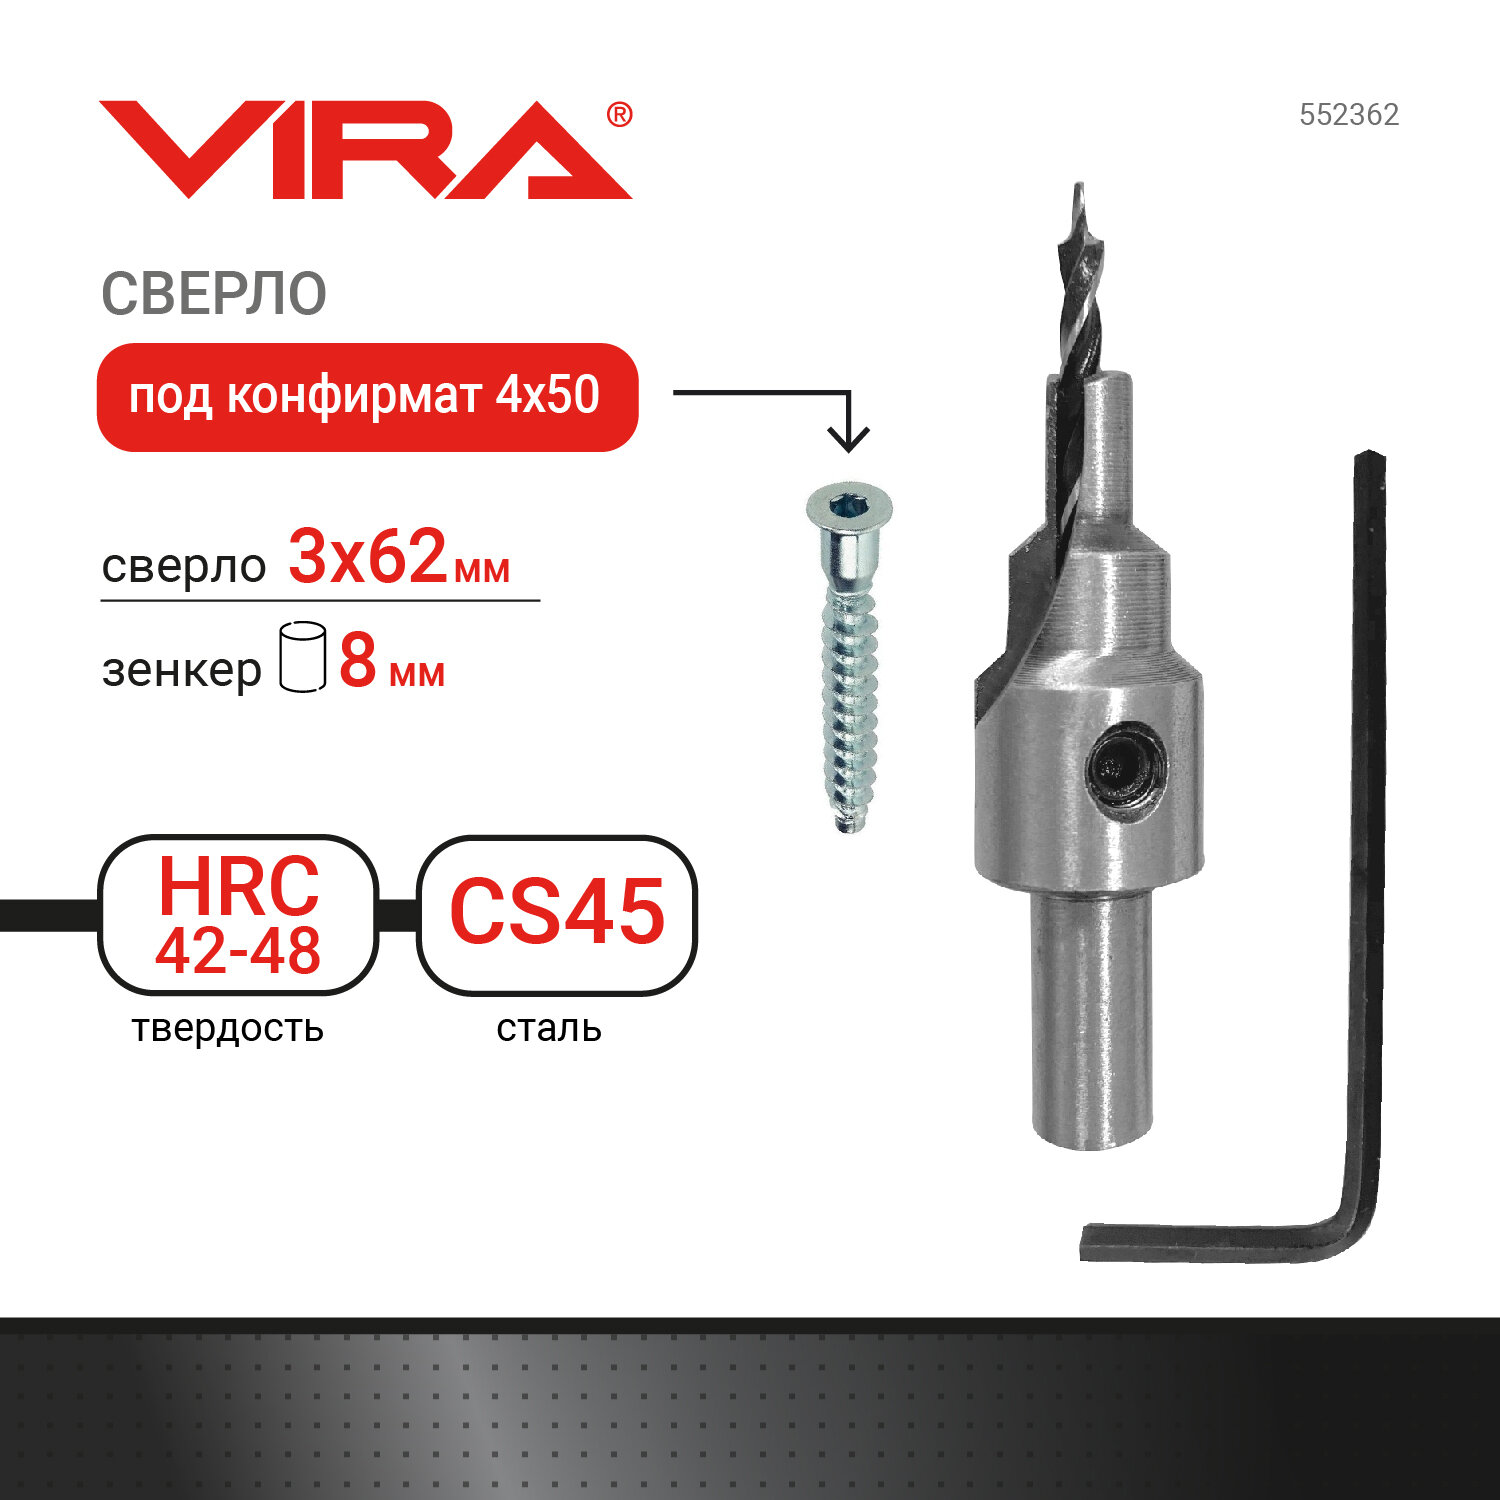 Сверло по дереву Vira (552362) 3х62 мм конфирмат для мебельной стяжки 4х50 мм HCS (высокоуглеродистая сталь) с зенкером